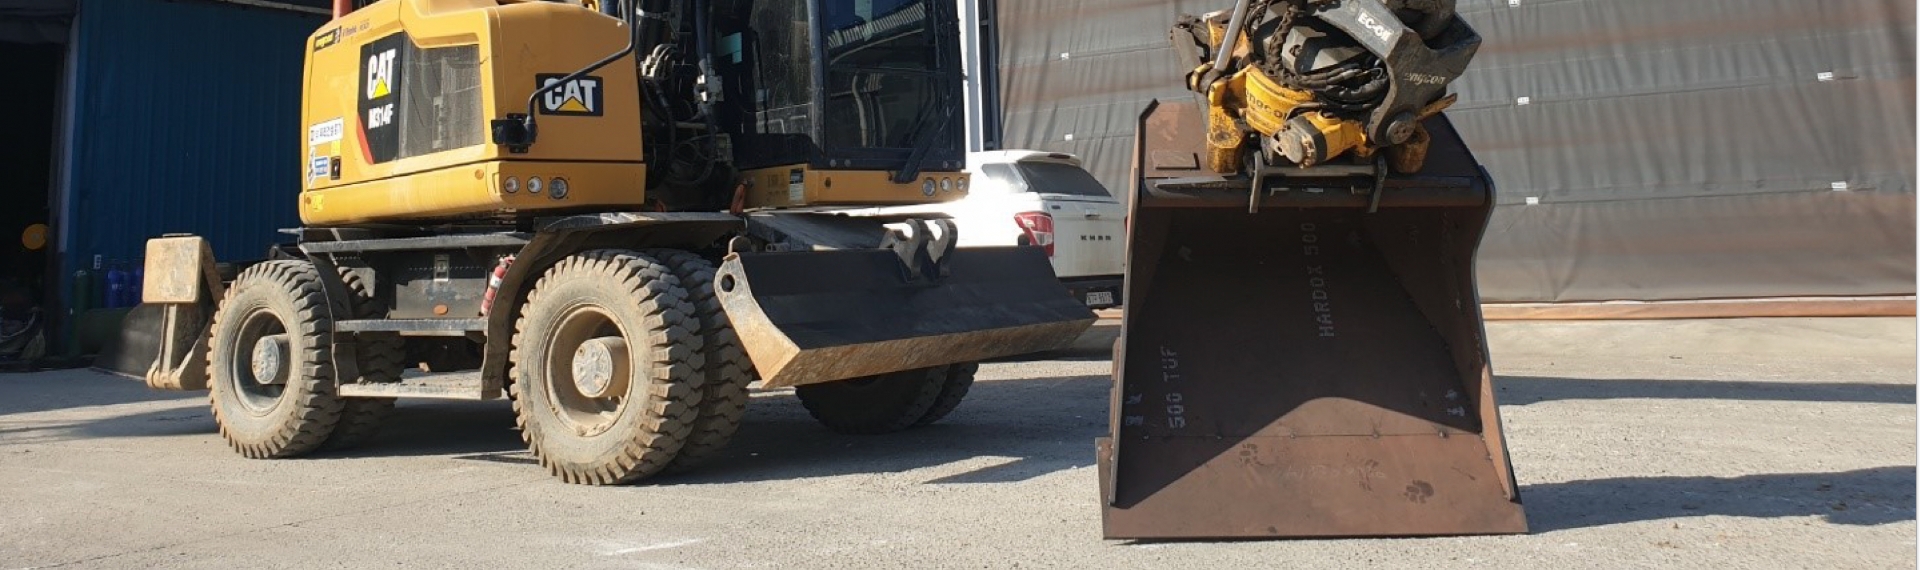 Um caminhão caterpillar com caçamba feita com o aço Hardox® 500 Tuf.